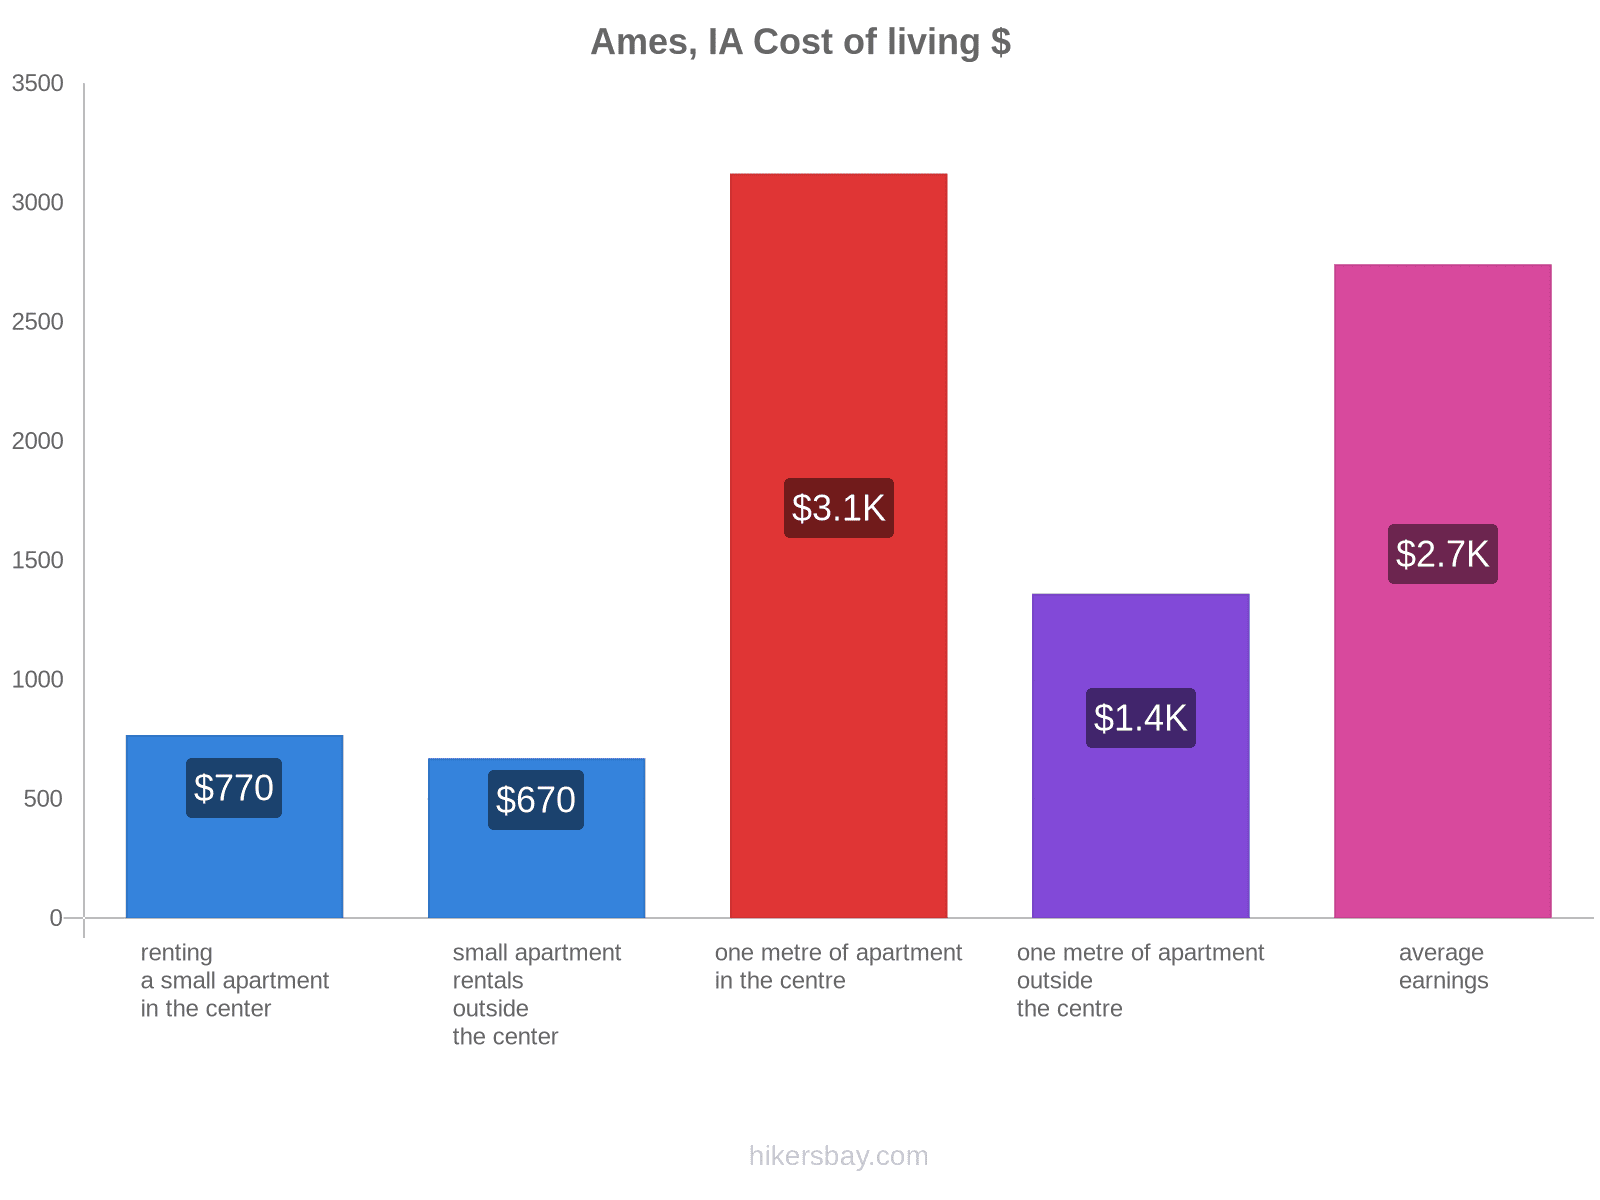 Ames, IA cost of living hikersbay.com